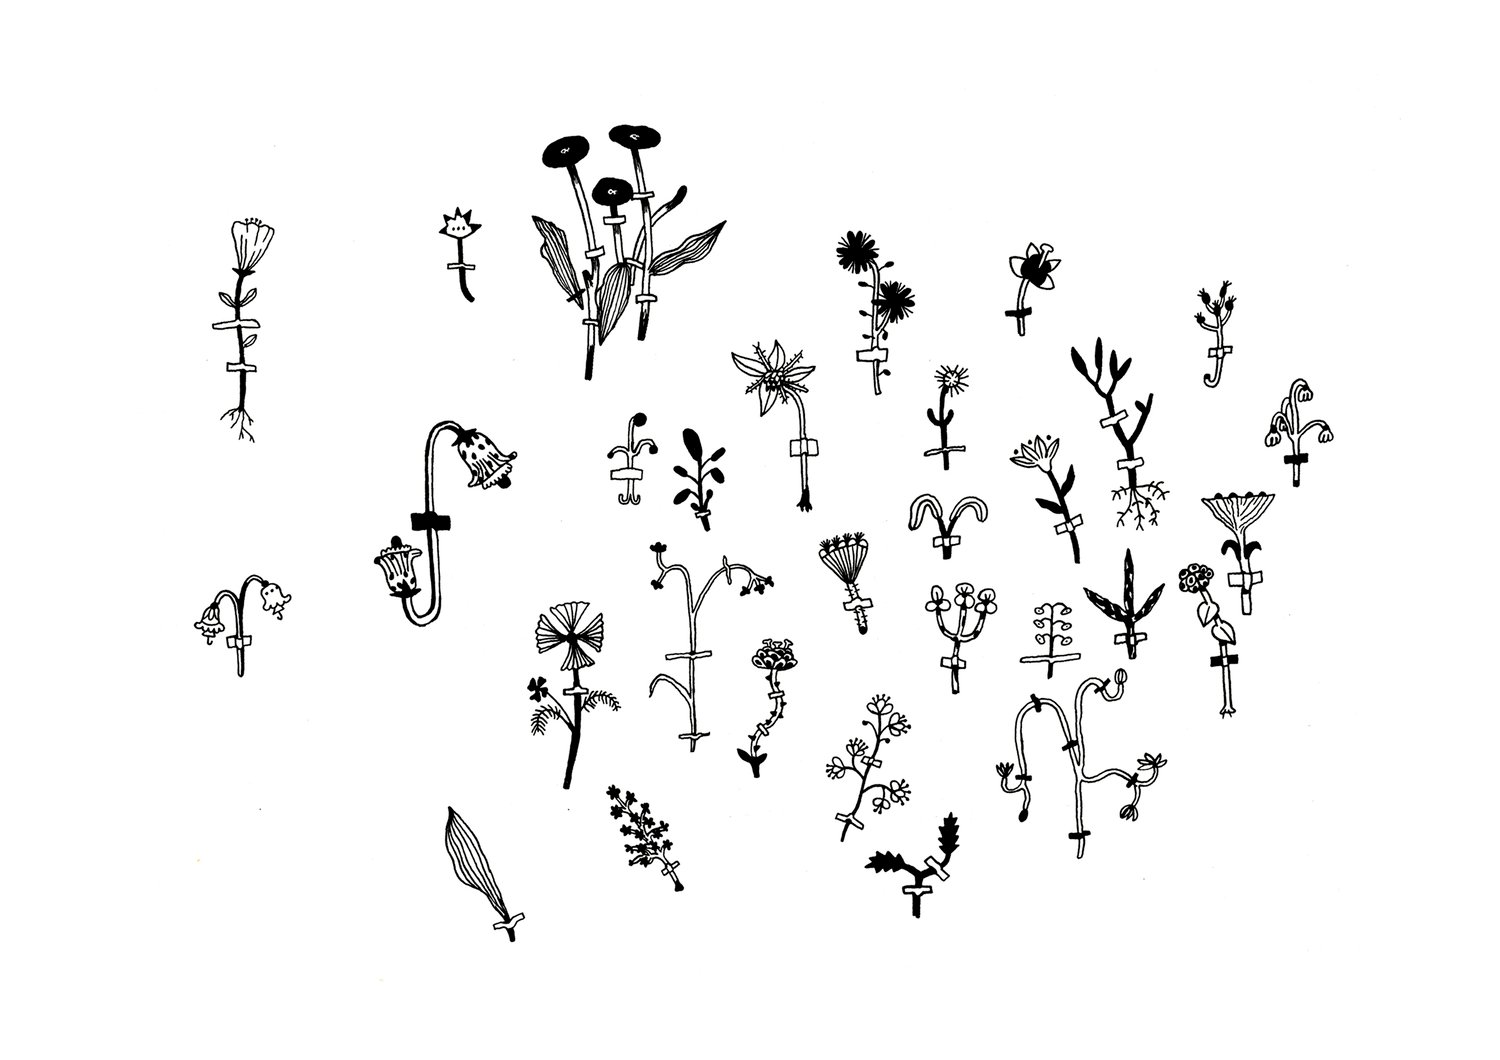 Image of Herbarium